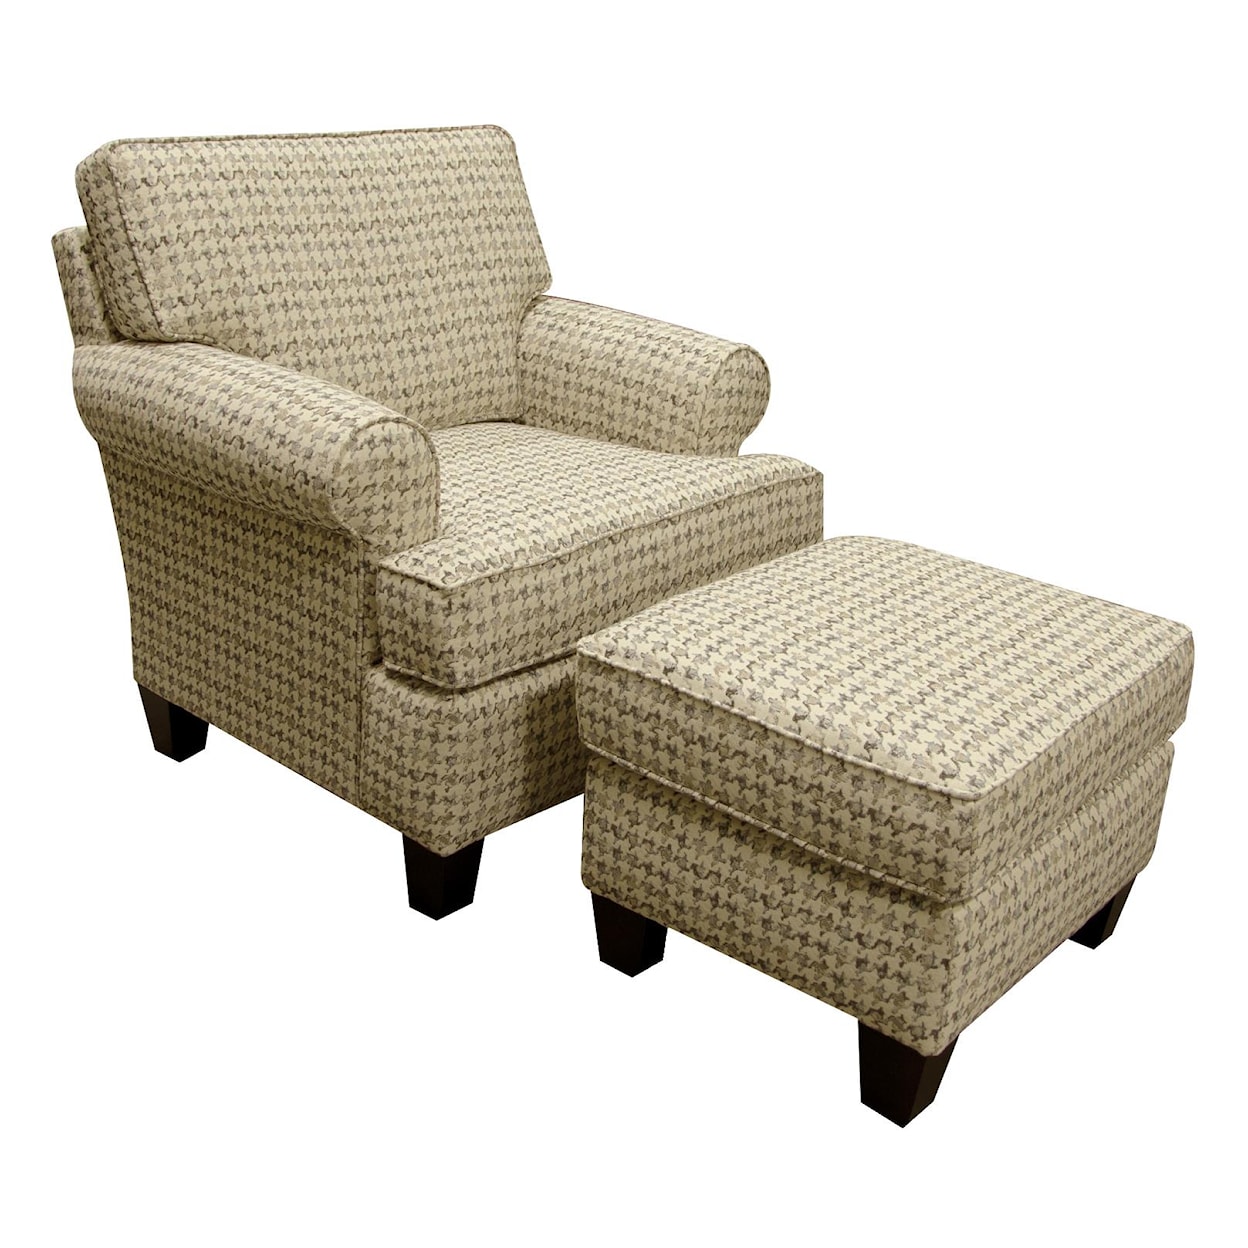 England 5380 Series Chair and Ottoman Set